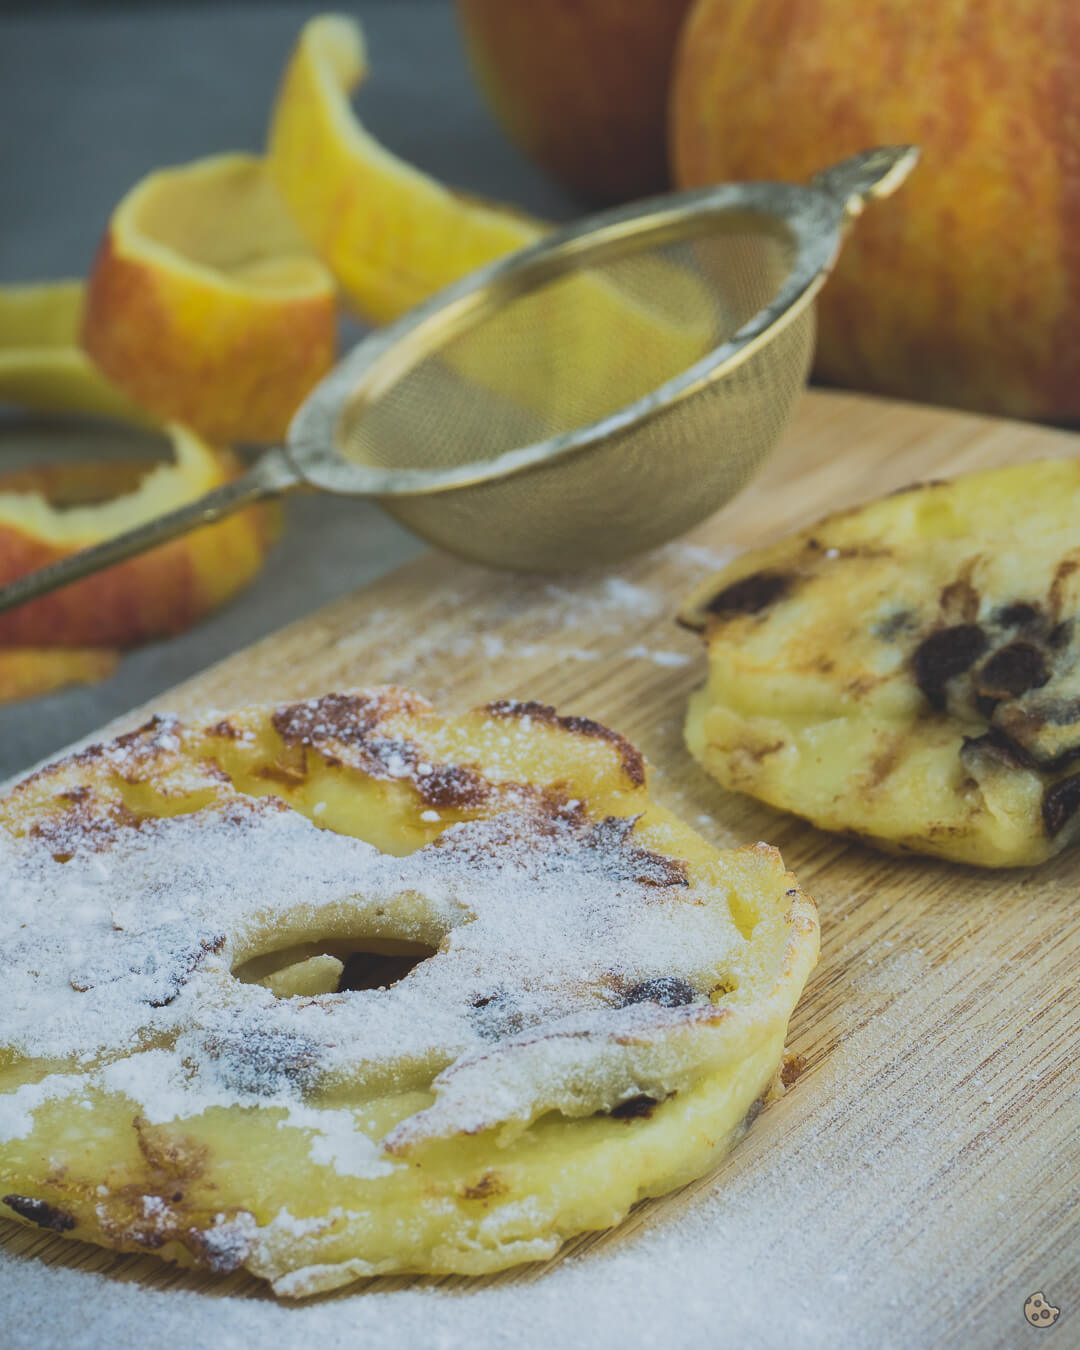 gebackene Apfelringe mit Schokostückchen von keksstaub sind die besseren Apfelpfannkuchen